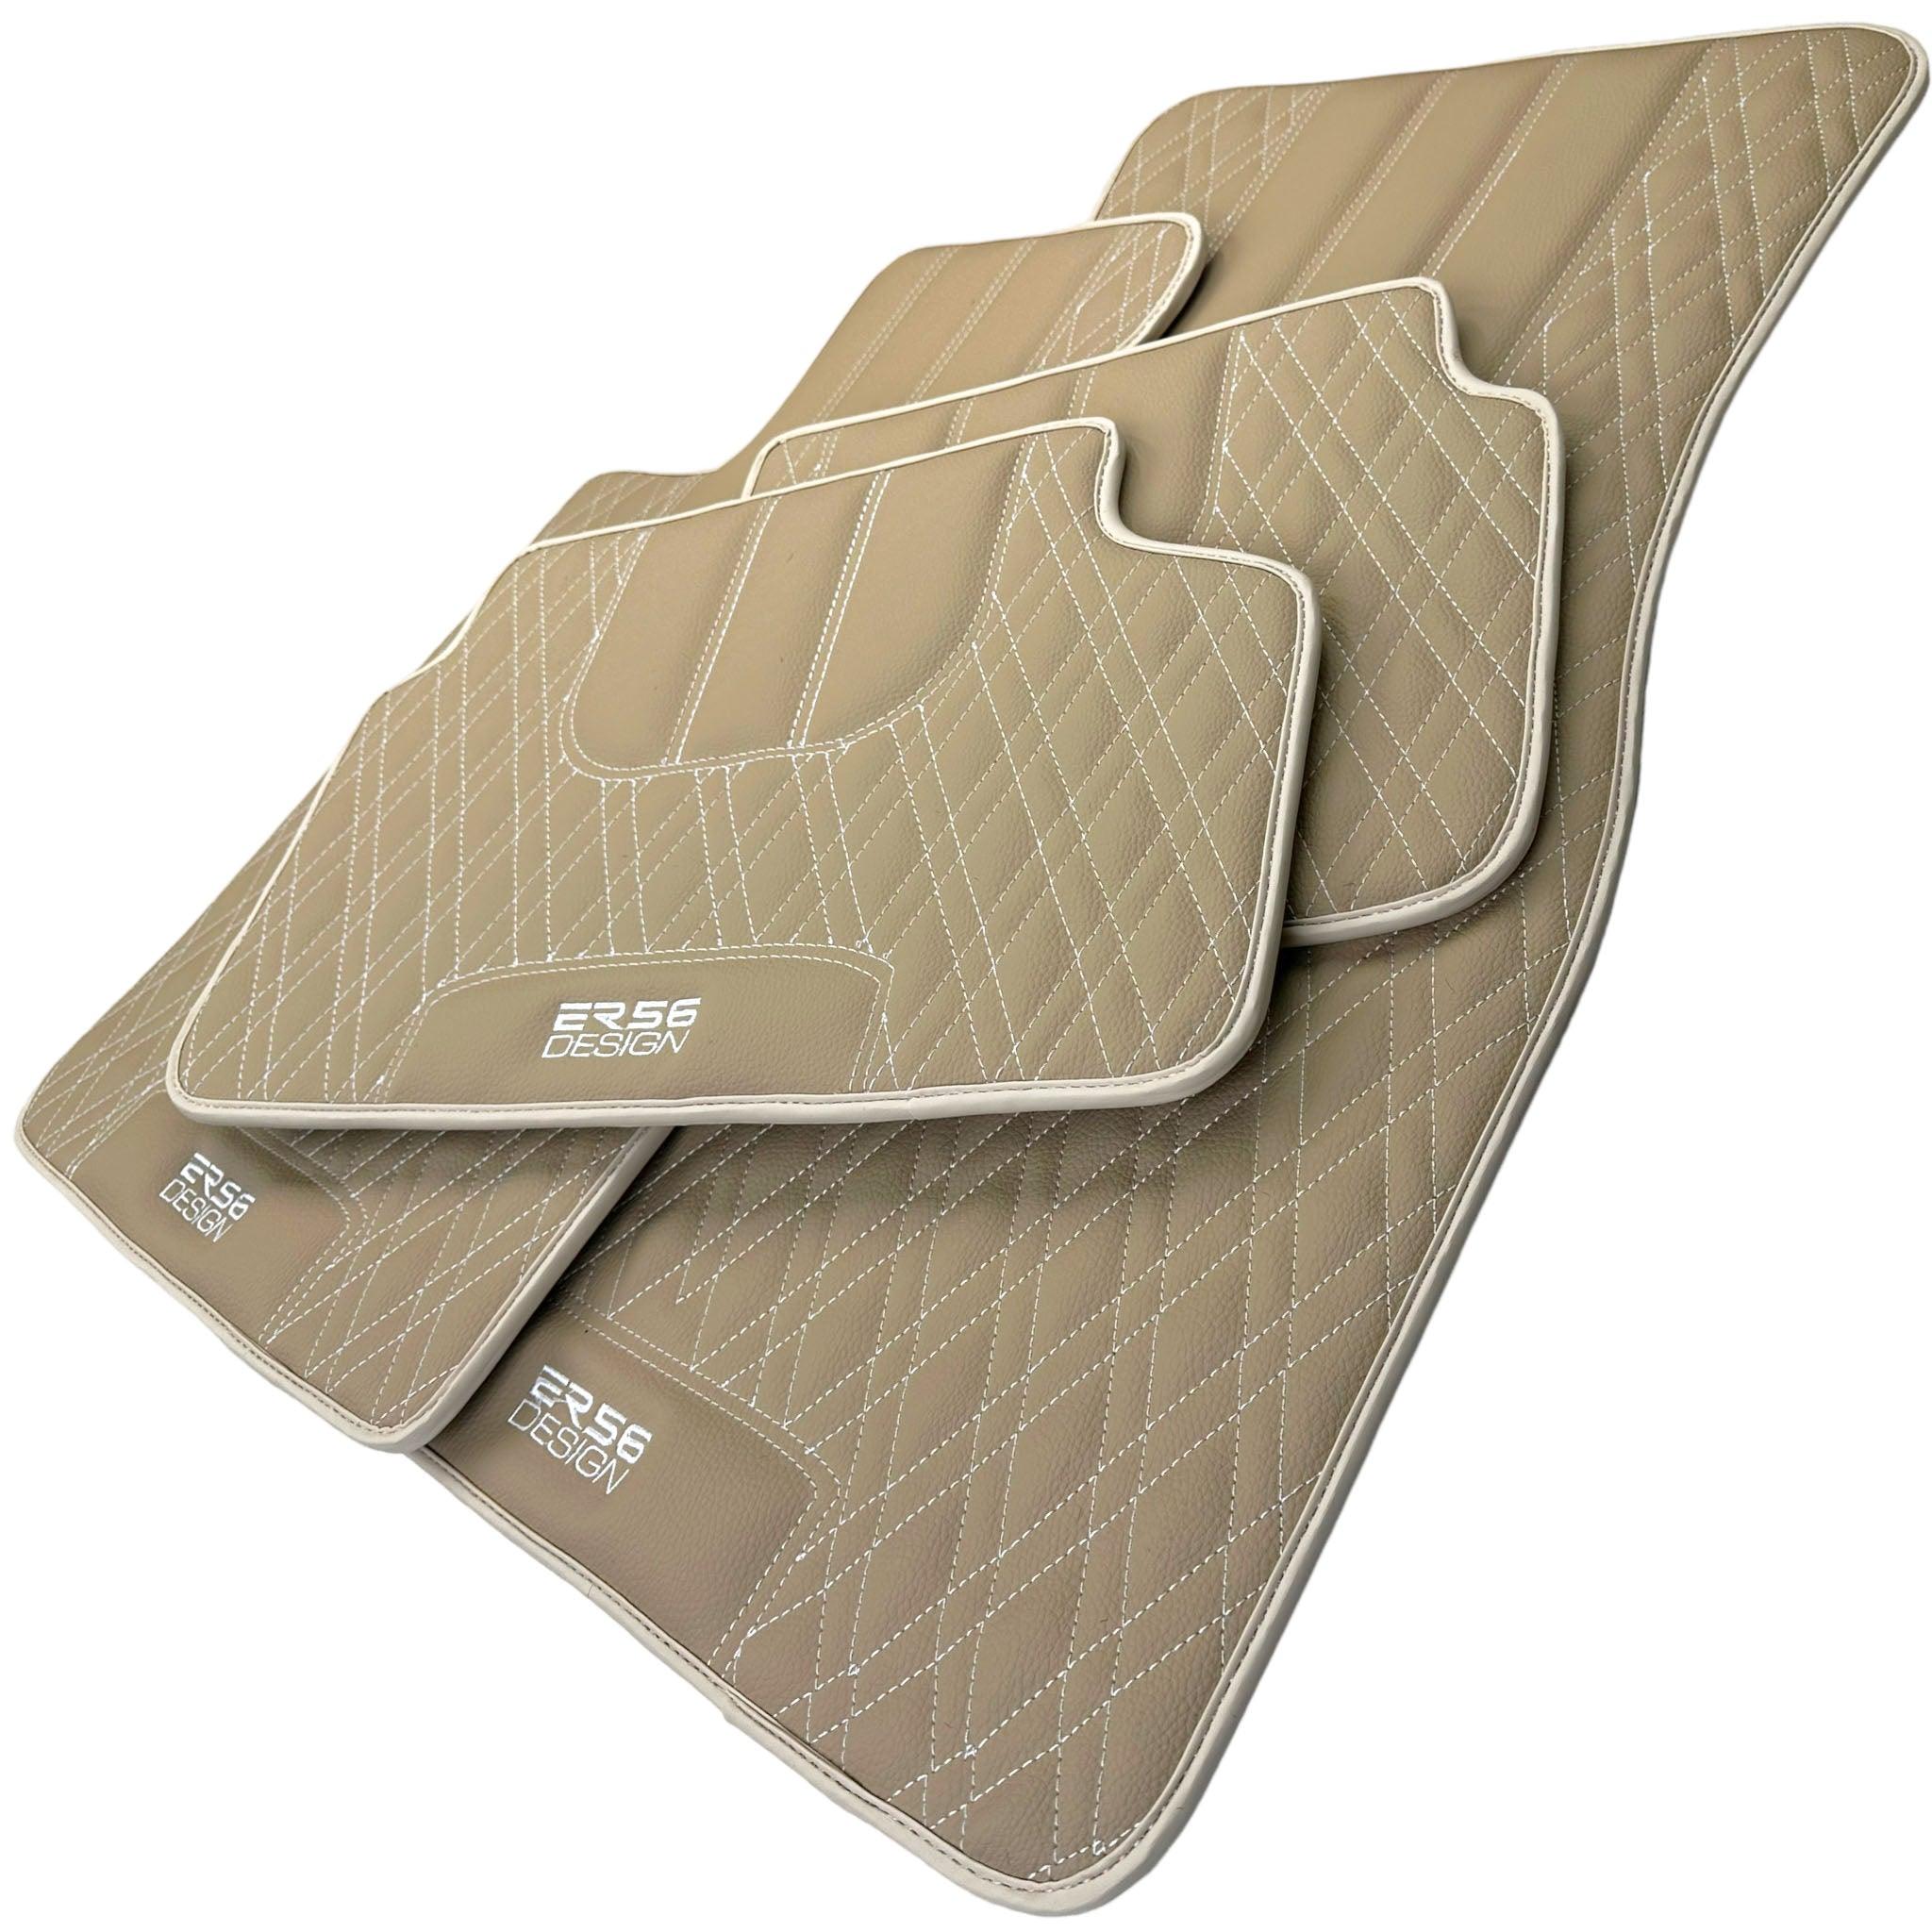 Beige Leather Floor Floor Mats For BMW X5 Series G05